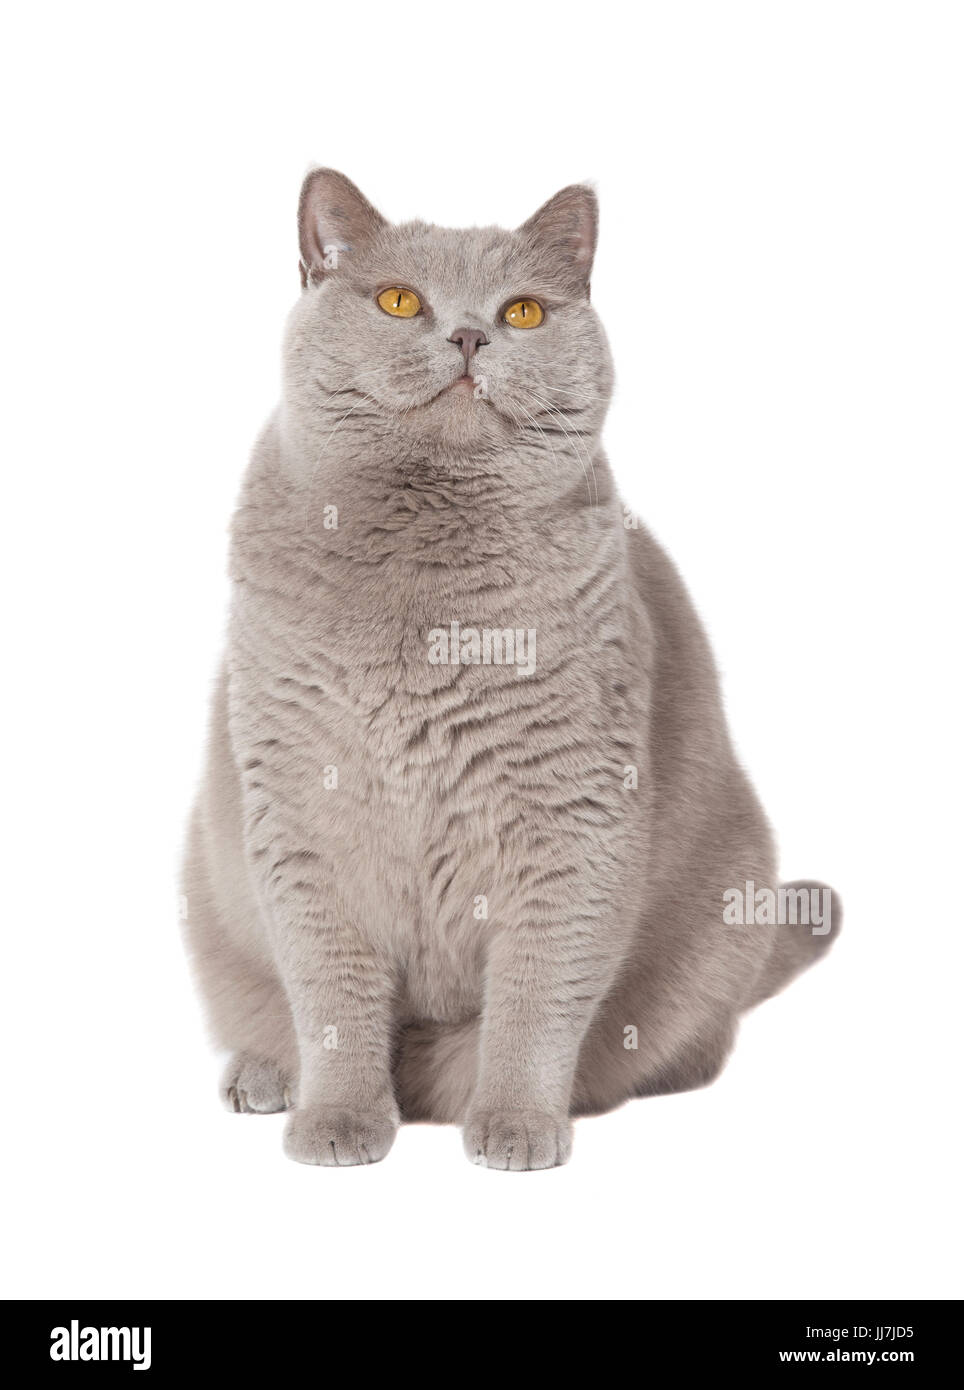 Eine graue Katze Britisch Kurzhaar-Fett mit gelben Augen, Hintergrund  isoliert Stockfotografie - Alamy